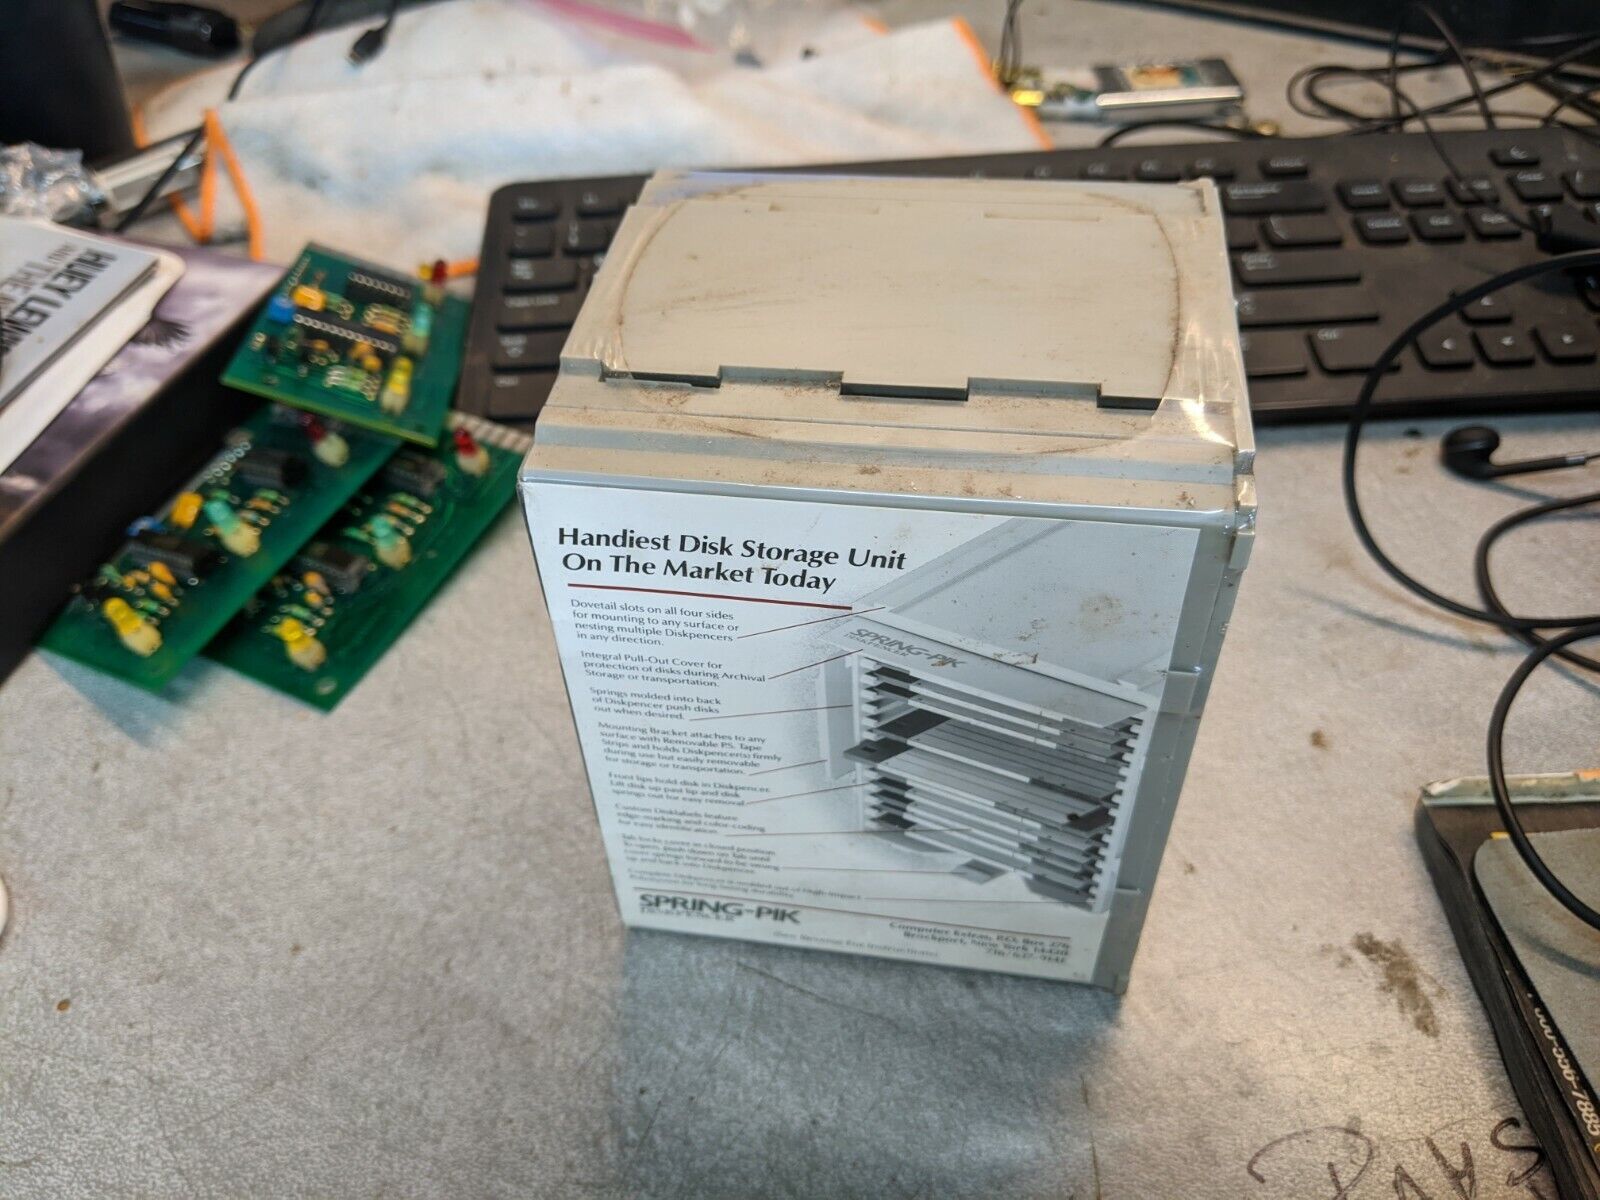 NEW Unopened vintage Spring-Pik 3.5 (3 1/2) inch floppy disk storage box.